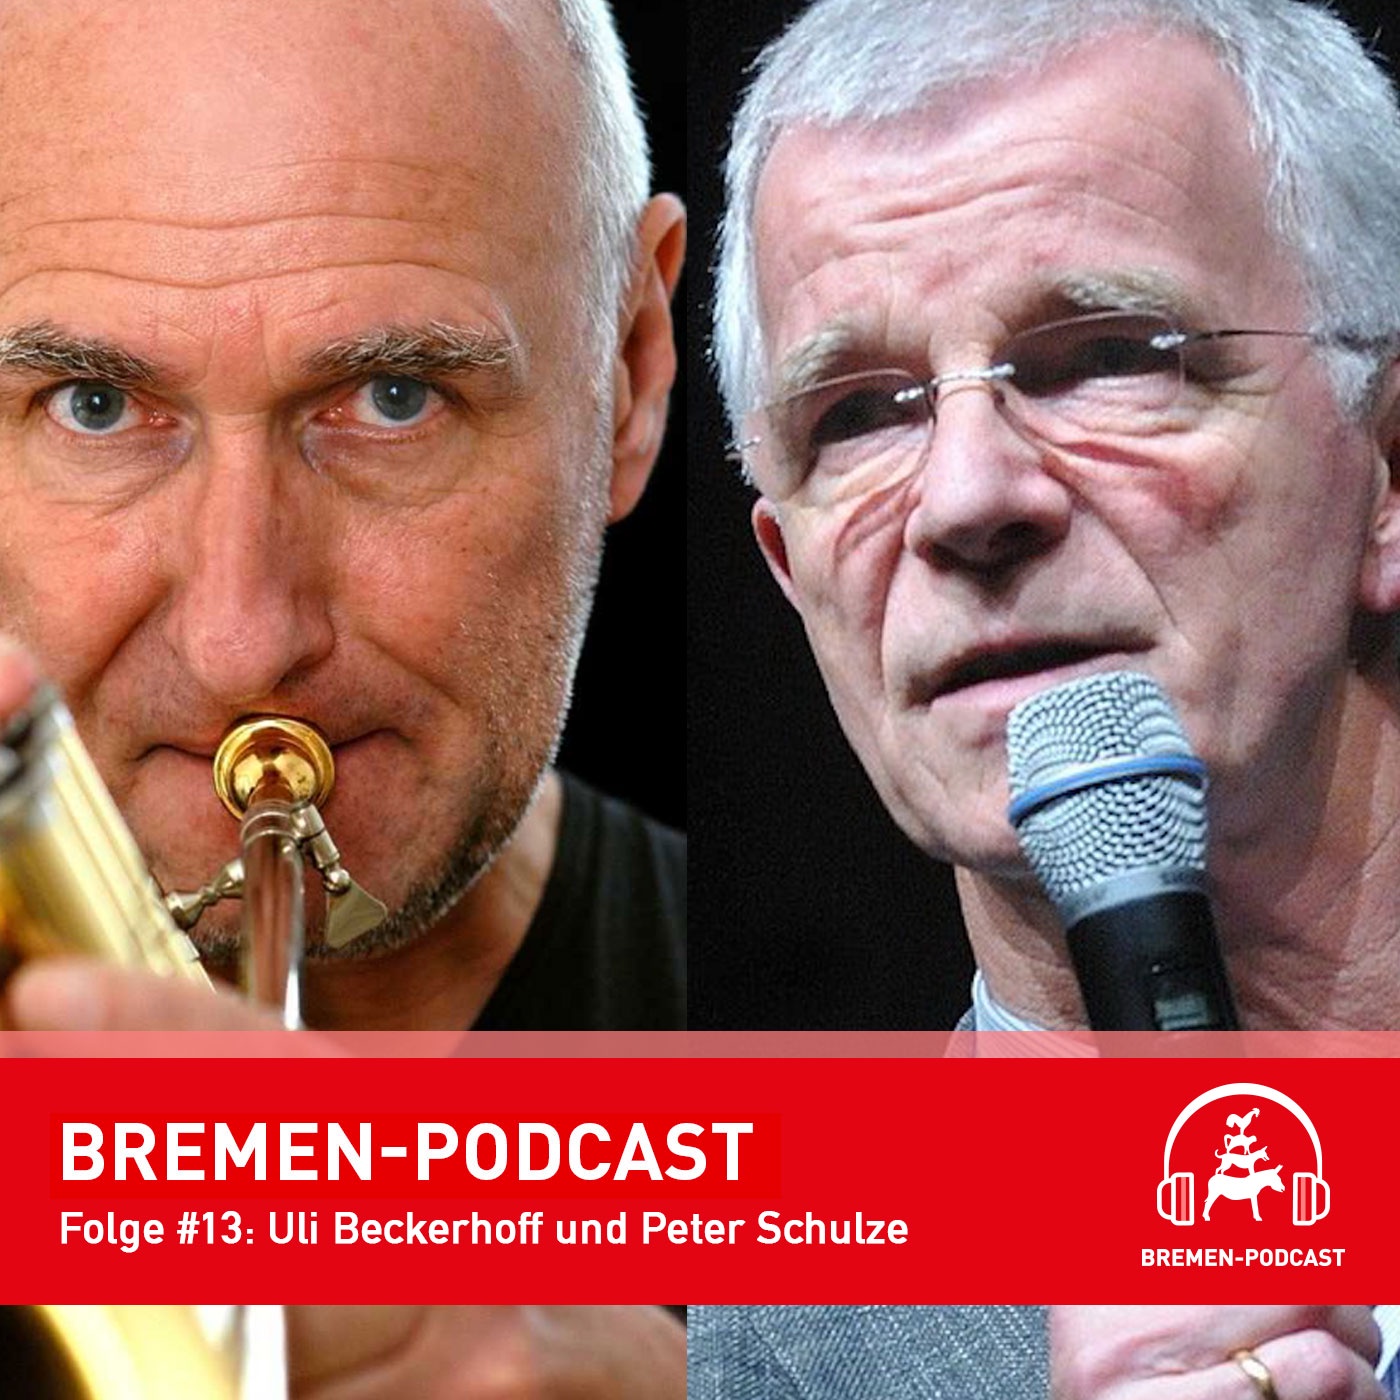 Uli Beckerhoff und Peter Schulze über Jazz und Bremen